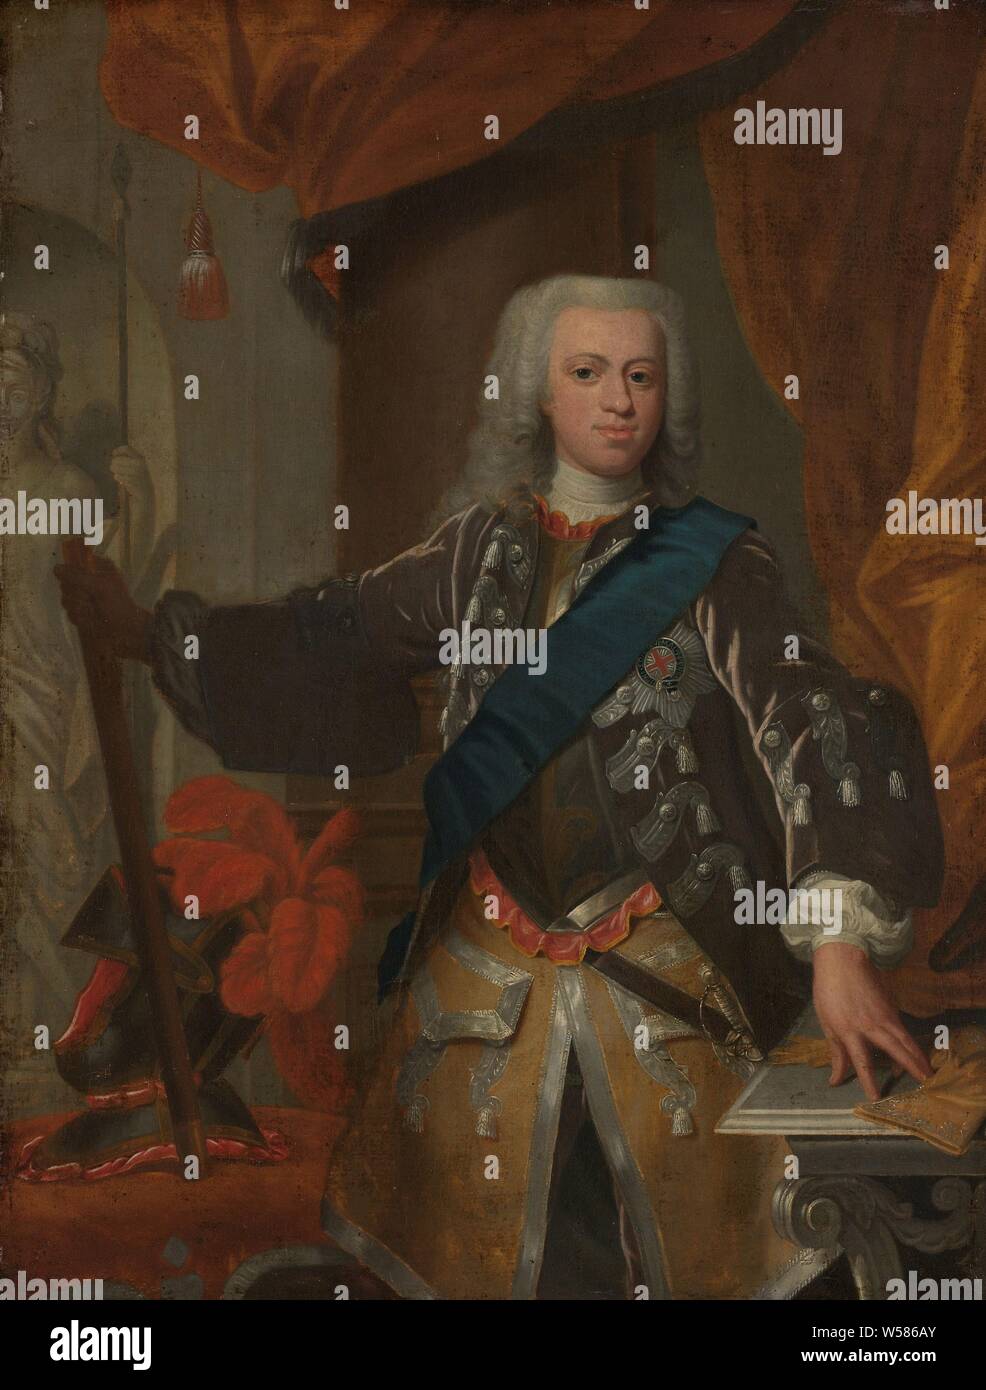 William IV (1711-51), Prinz von Oranien, Porträt von Wilhelm IV., Fürst von Orange. Knie Stück, stehend, mit der linken Hand auf einem Tisch und commado Personal in der rechten Hand. Das Personal lehnte sich auf einem Stuhl, der auch seine gefiederten Helm auf sich hat. Auf der linken Seite im Hintergrund ein Bild von einer weiblichen Krieger oder Göttin mit einer Lanze, William IV (Prinz von Oranien-nassau), Hans Hysing (zugeschrieben), 1730-1753, Leinwand, Ölfarbe (Lack), h 76,5 cm x W 58,5 cm, d 14,5 cm Stockfoto